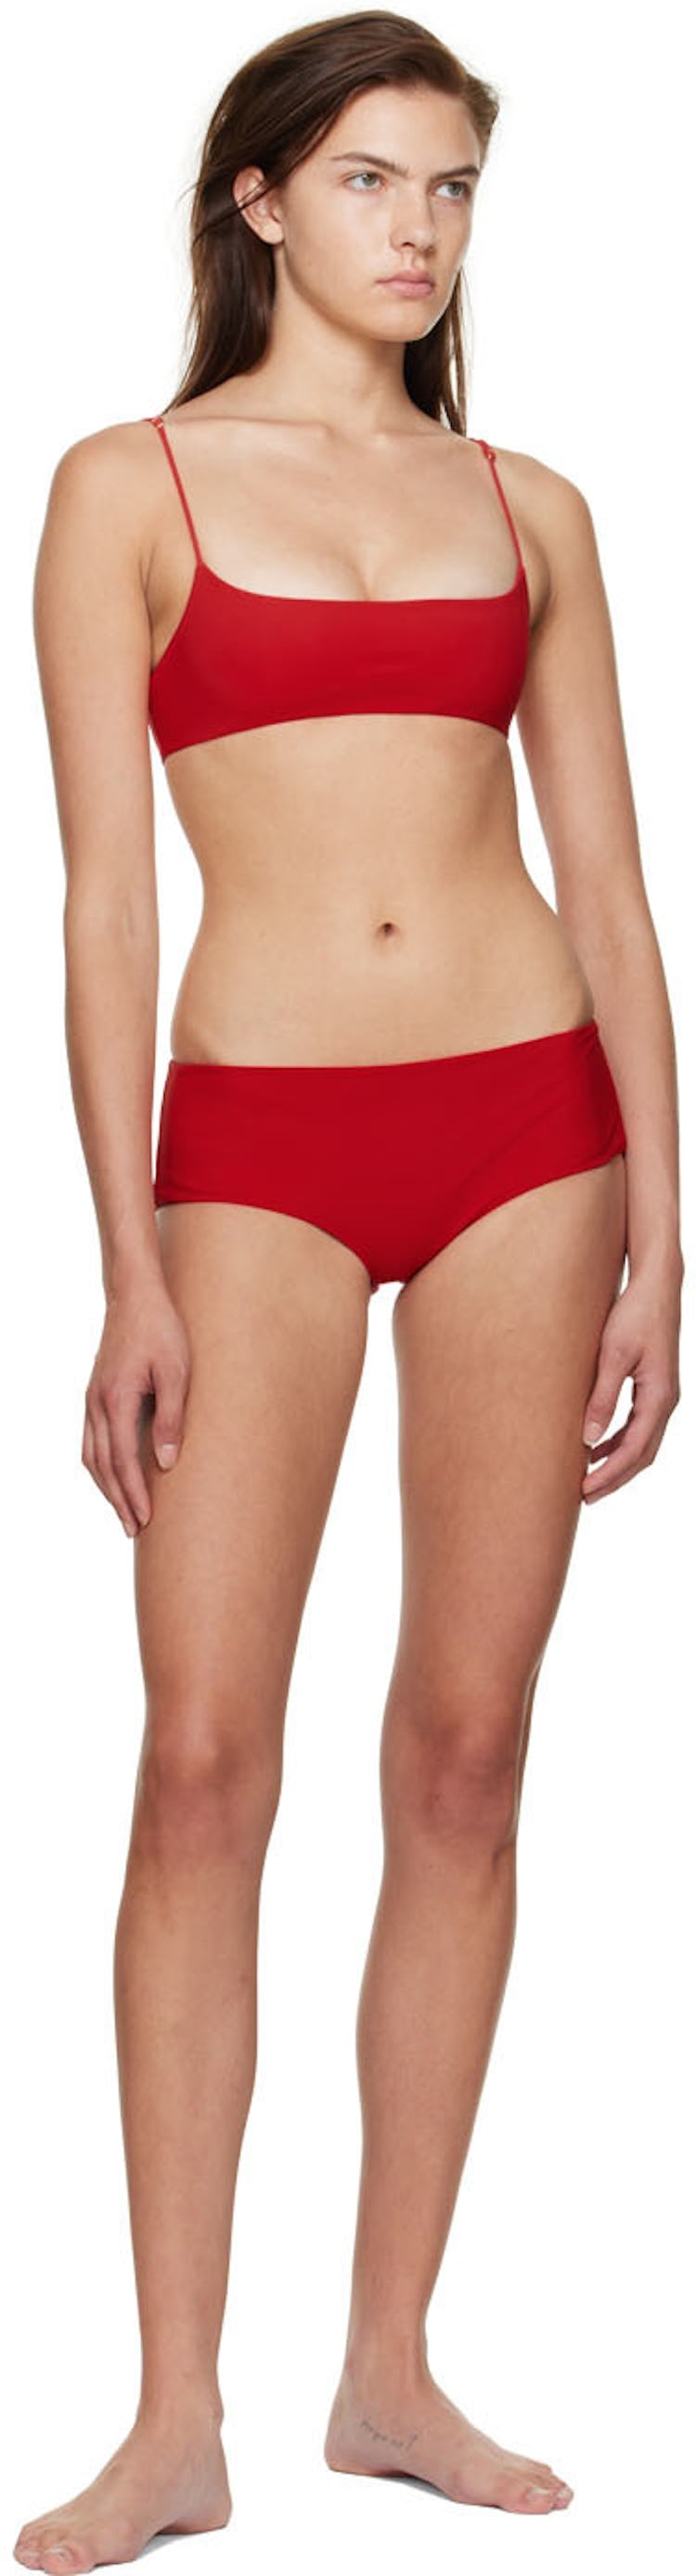 Red Flori Bikini Top: additional image